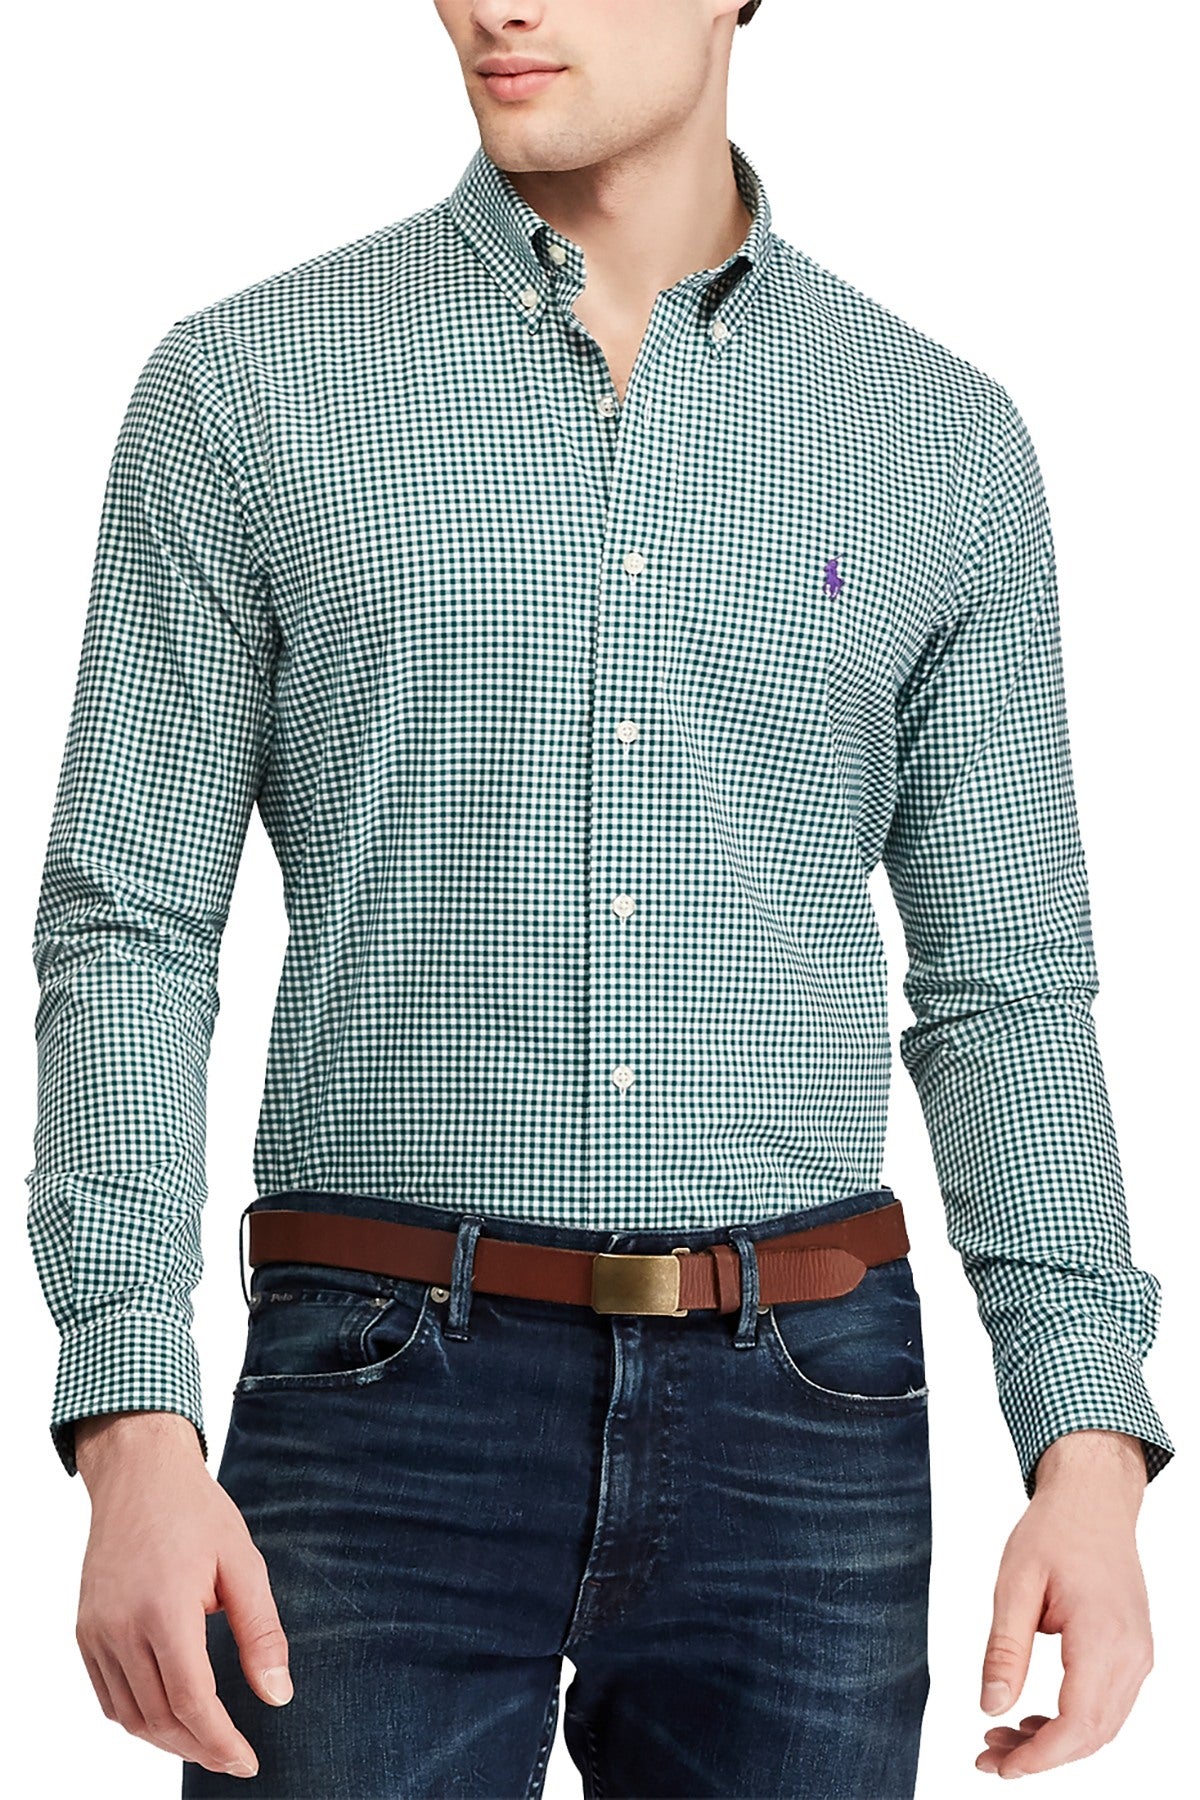 Ralph Lauren Evergreen Gingham Big/Tall Classic Fit Cotton Shirt –  CheapUndies